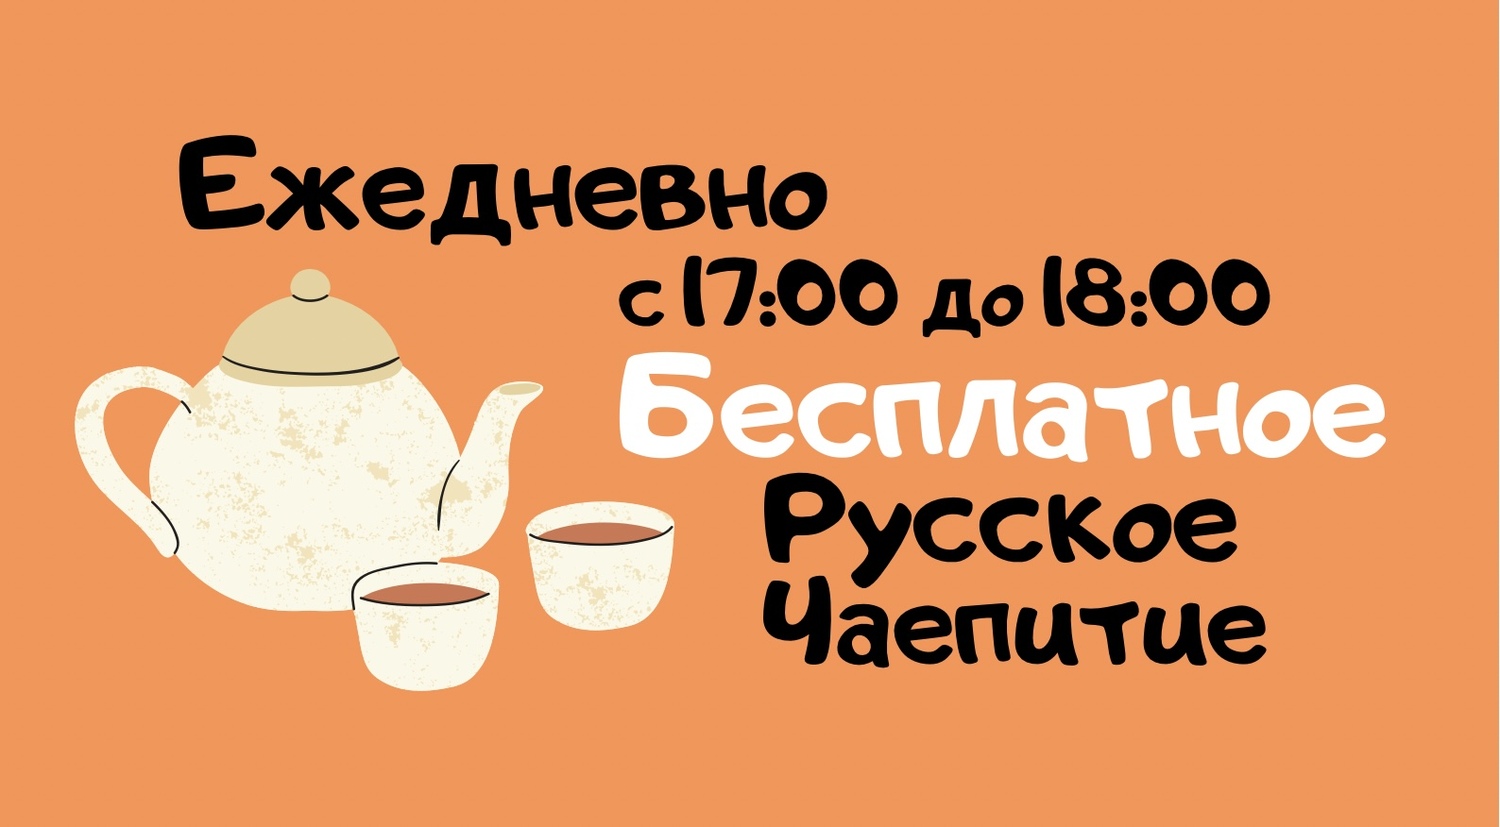 Ежедневно с 17:00 до 18:00 в кафе отеля проводится бесплатное русское чаепитие